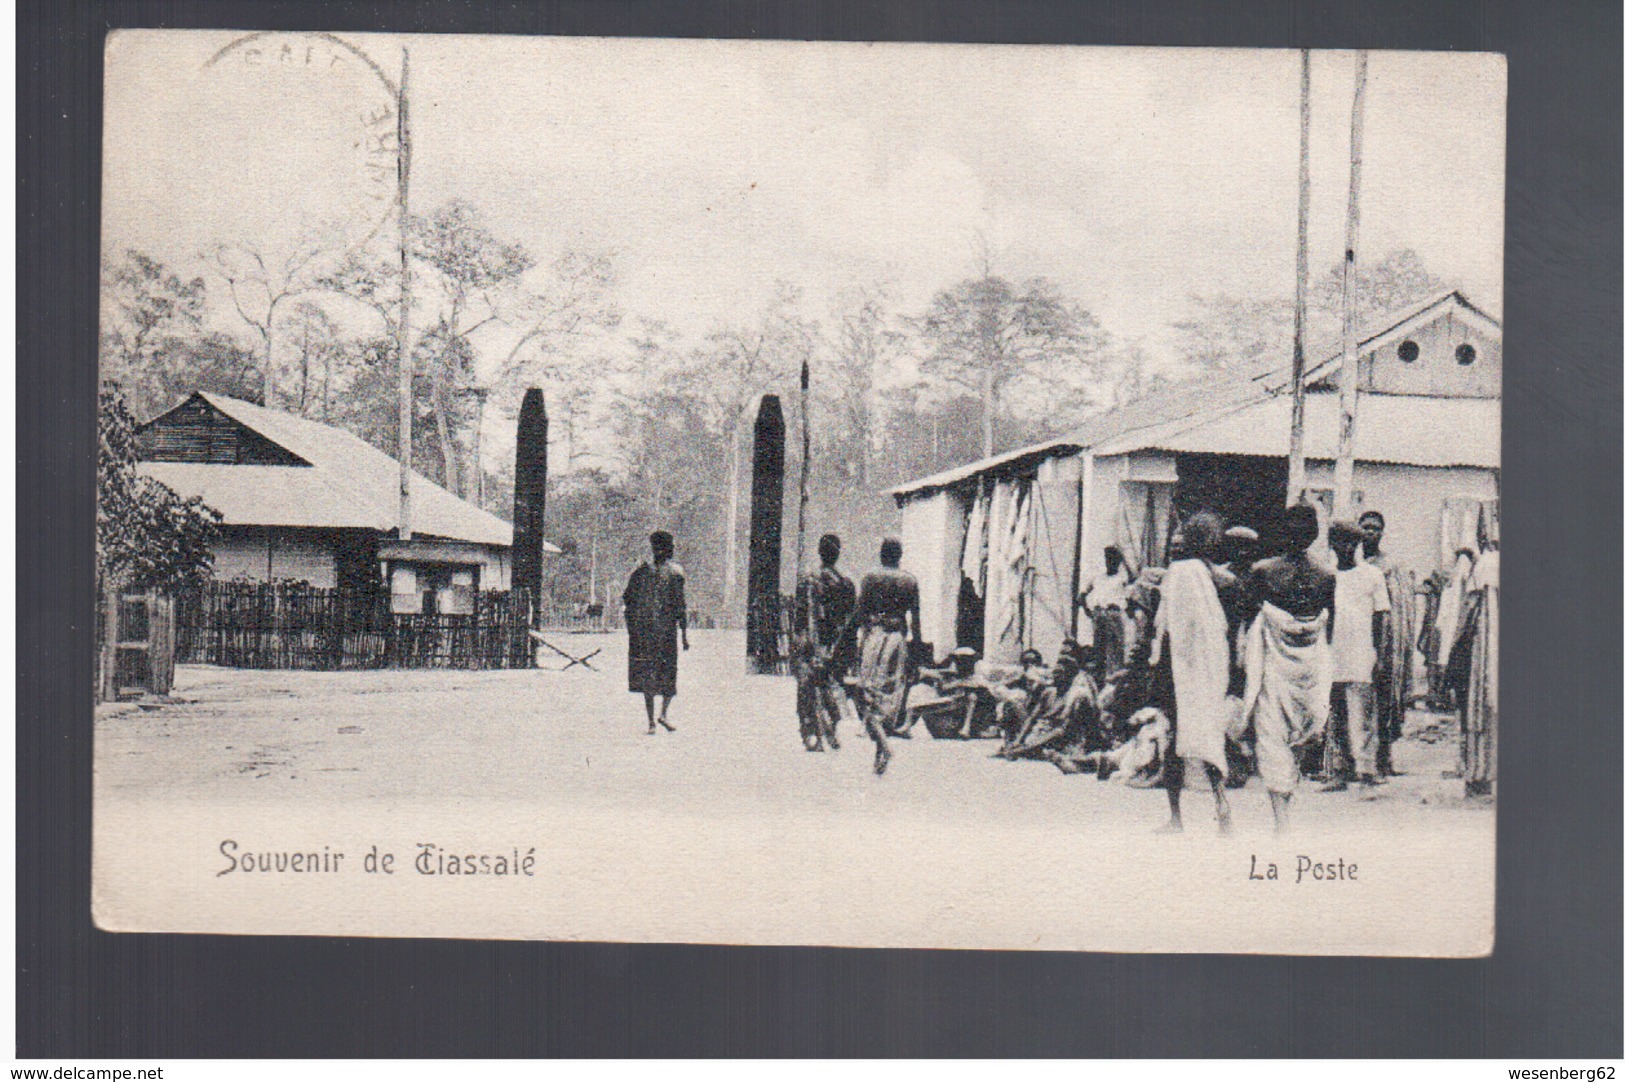 Cote D'Ivoire Souvenir De Tiassalé - La Poste 1907 Old Postcard - Côte-d'Ivoire